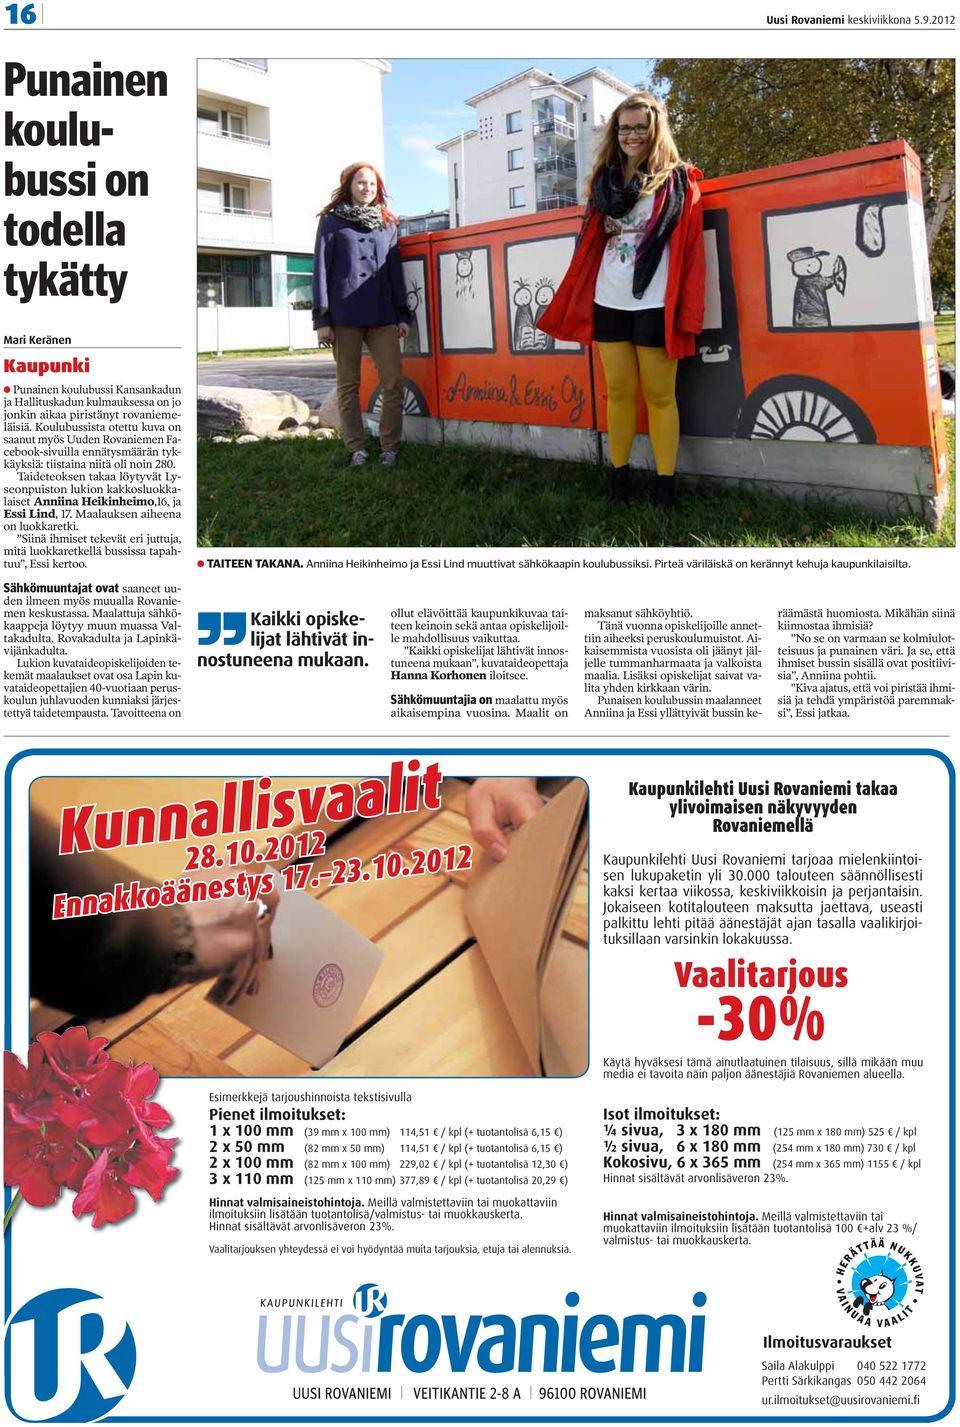 Koulubussista otettu kuva on saanut myös Uuden Rovaniemen Facebook-sivuilla ennätysmäärän tykkäyksiä: tiistaina niitä oli noin 280.